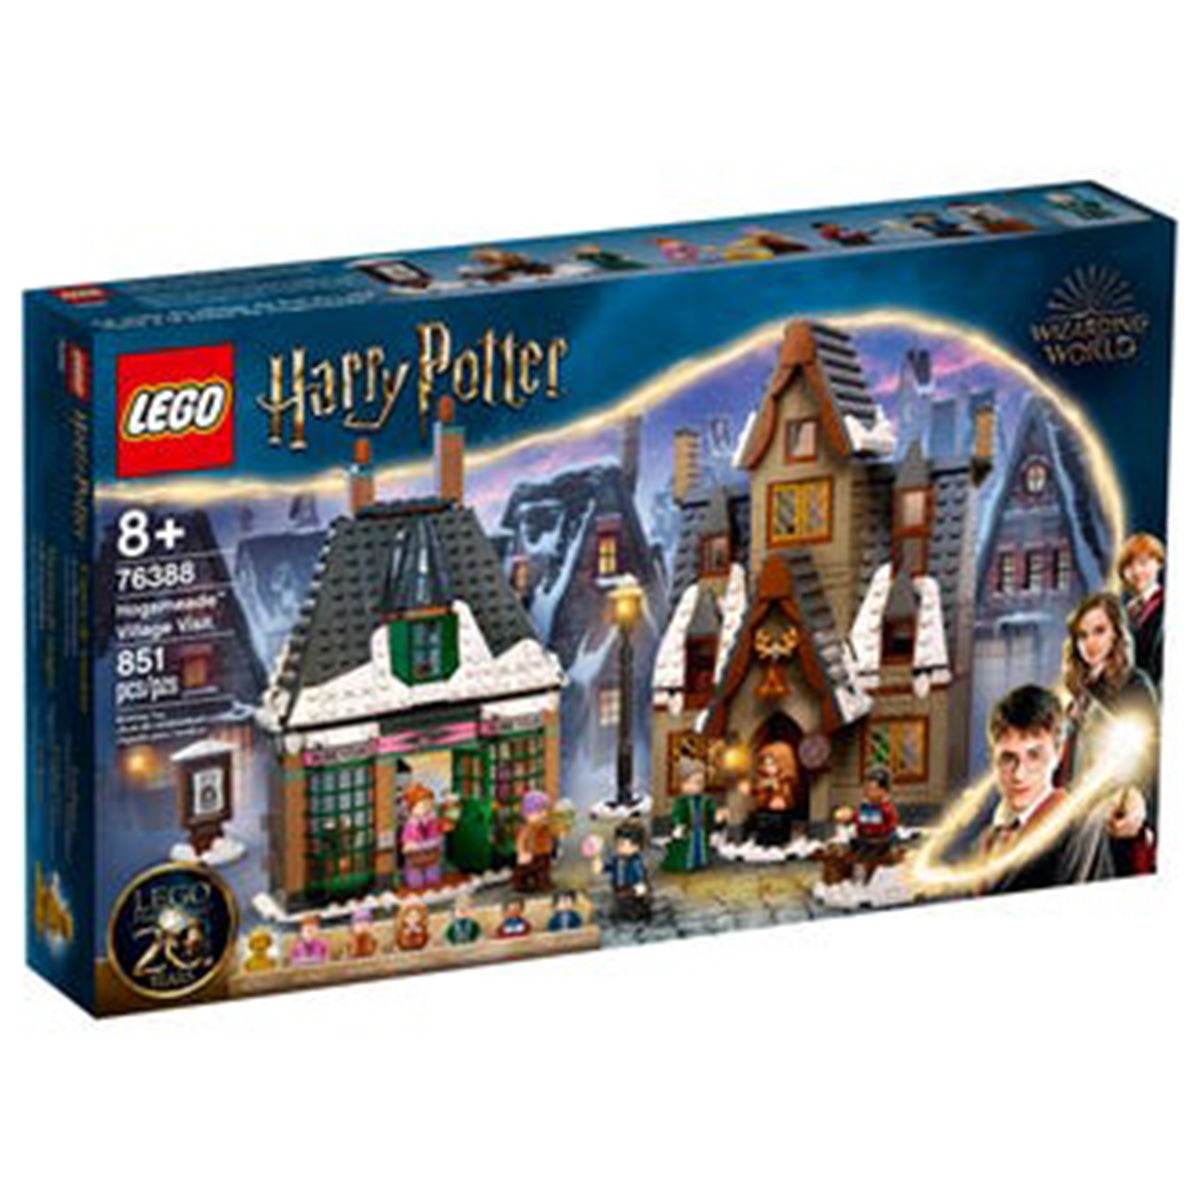 LEGO JOUET K.I.D. INC Toys & Games LEGO Harry Potter Hogsmeade Village Visit, 76388, Ages 8+, 851 Pieces 673419340458